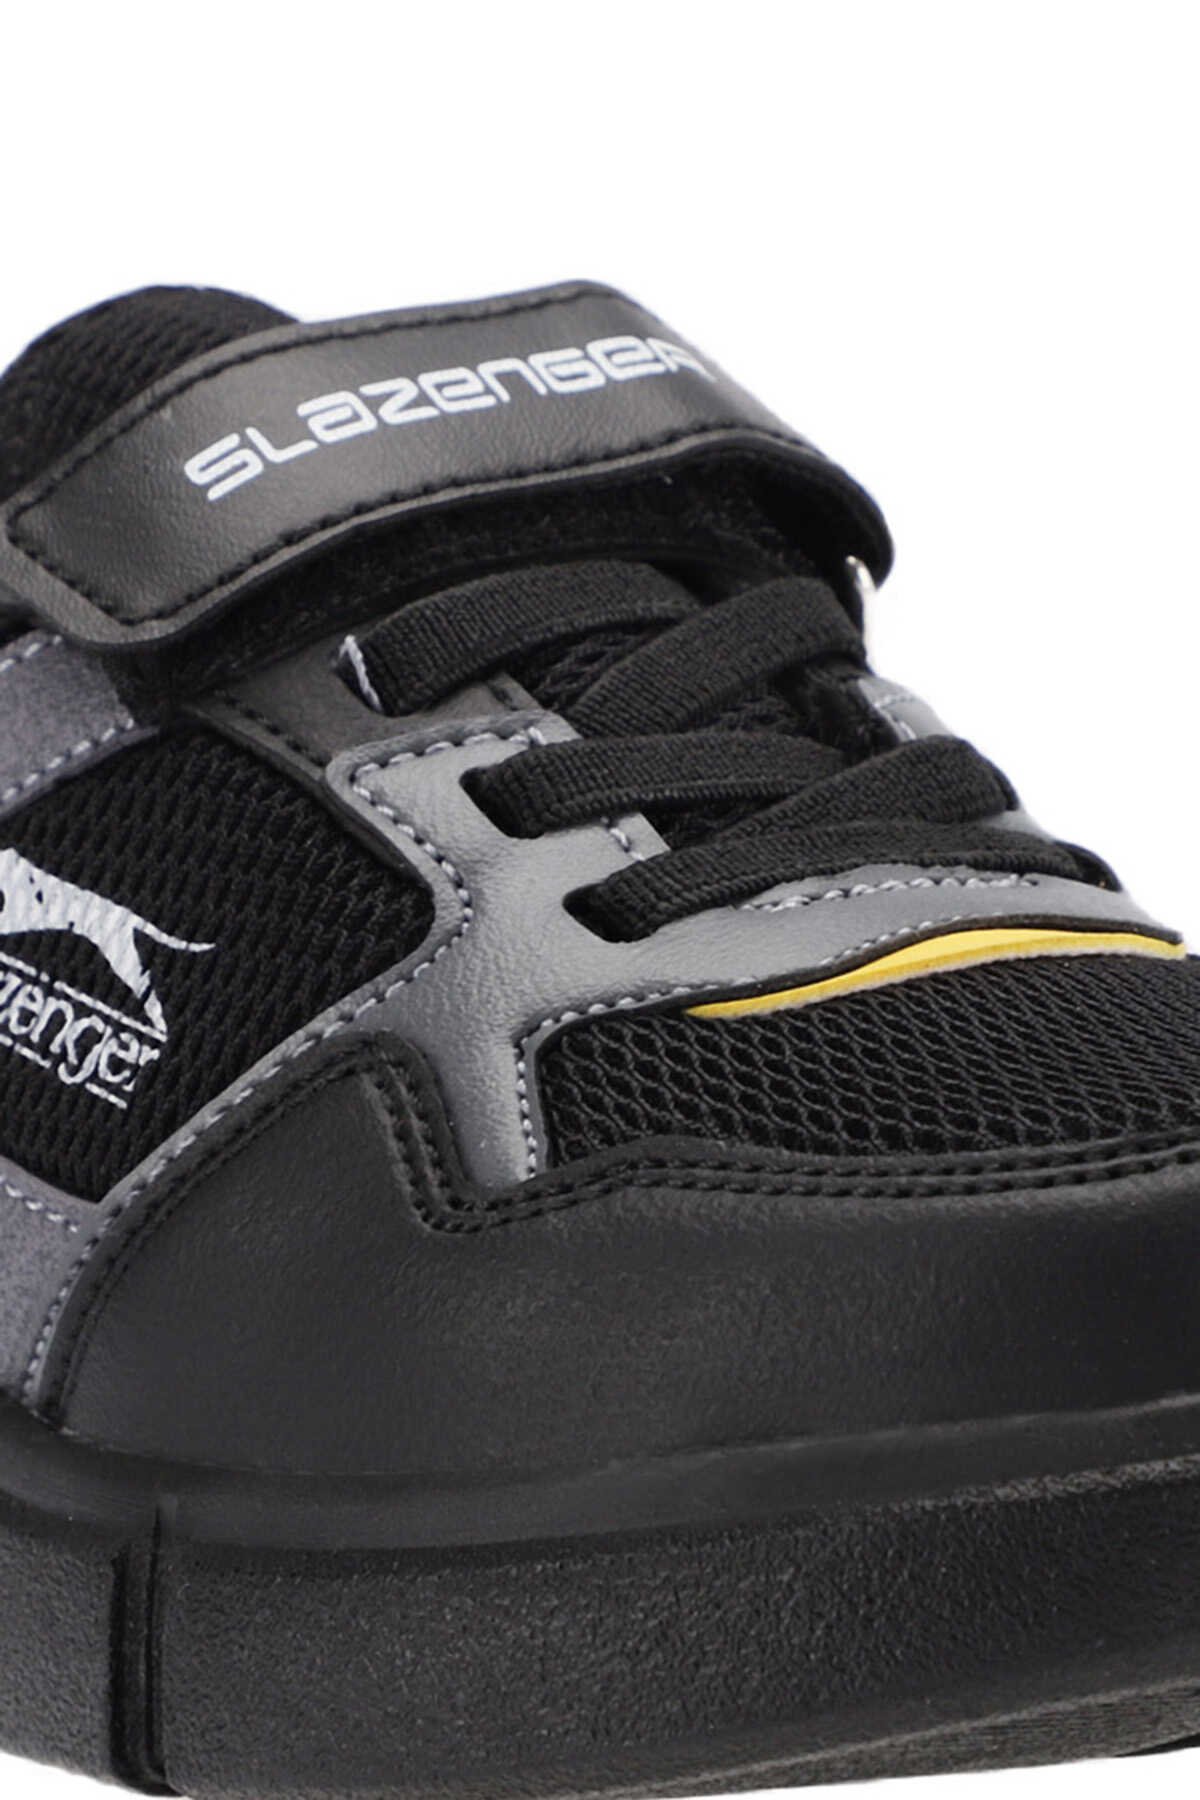 Slazenger KAZUE Sneaker Erkek Çocuk Ayakkabı Siyah / Siyah